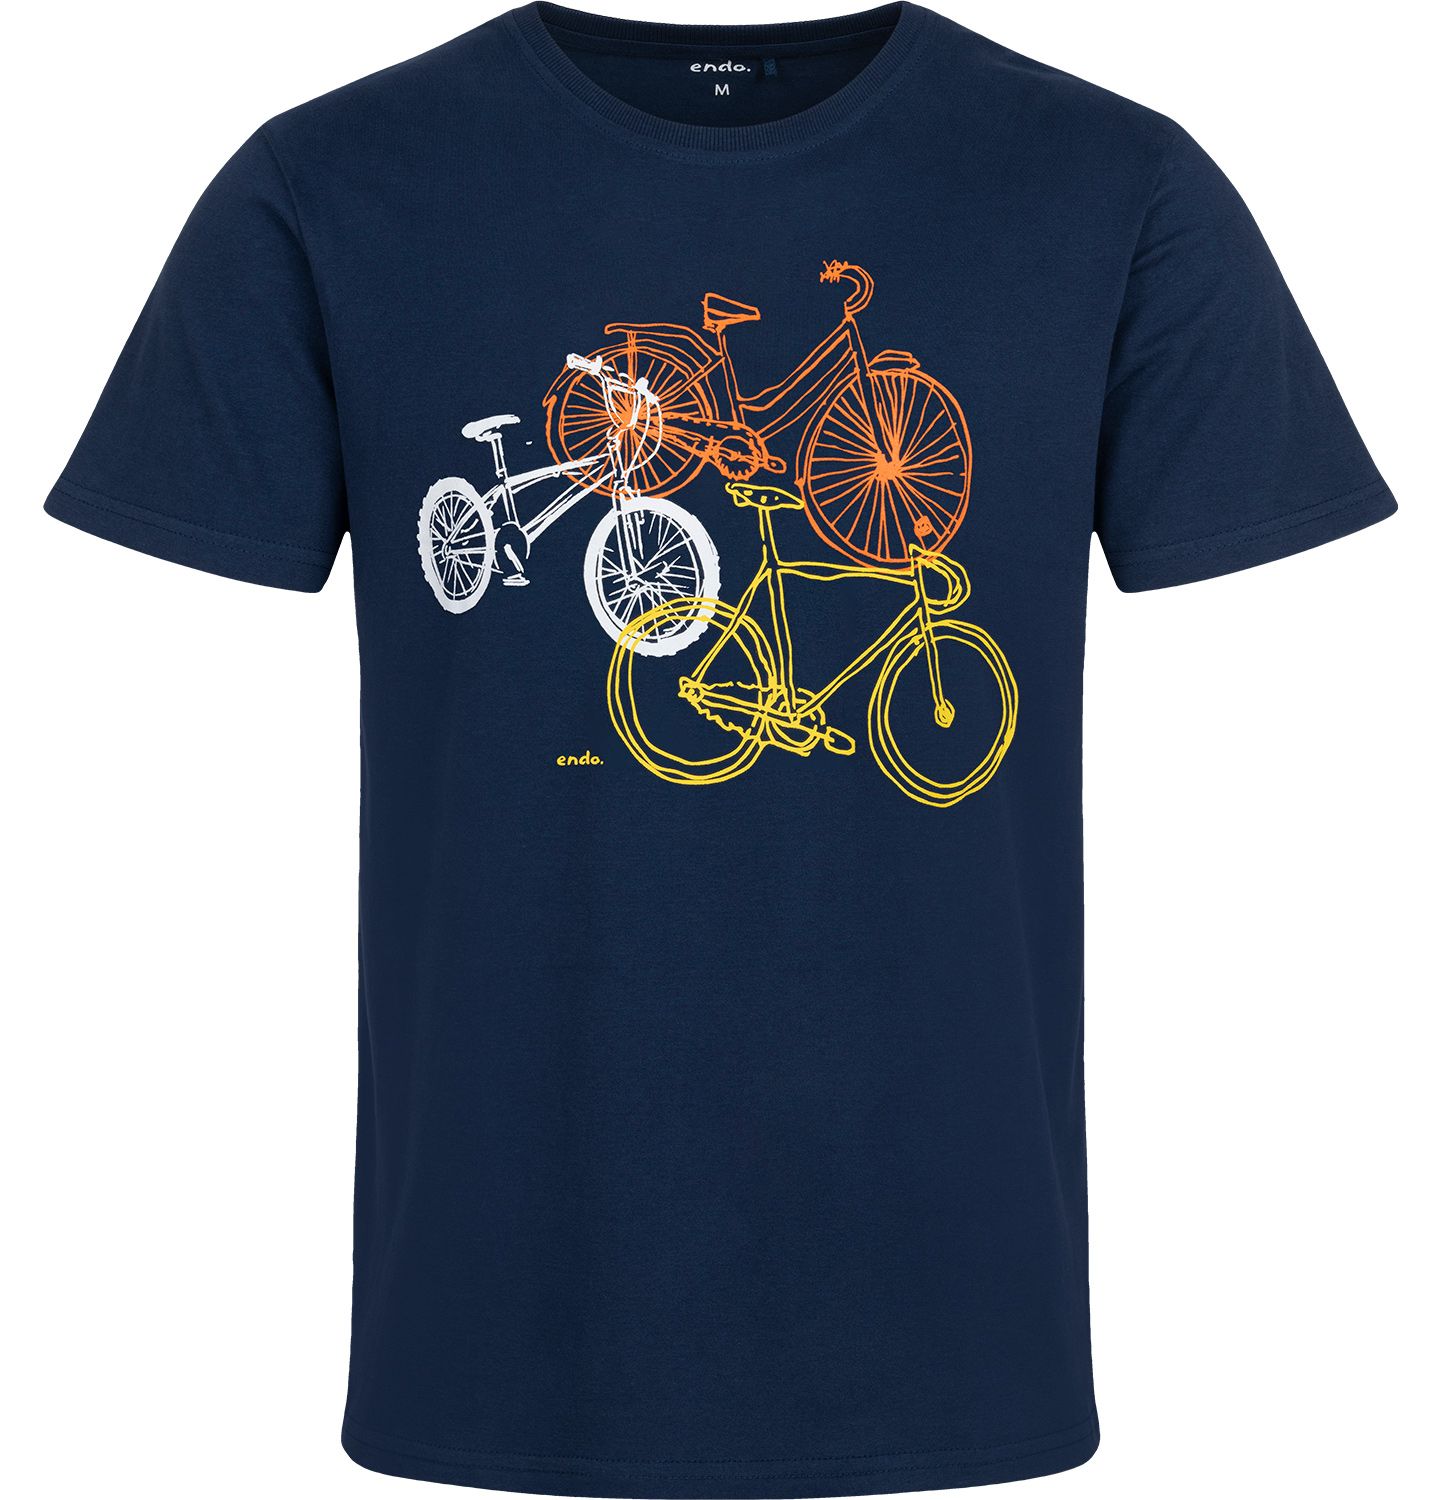 T-shirt Koszulka Męska  Bawełna z Rowerami  M z nadrukiem Endo